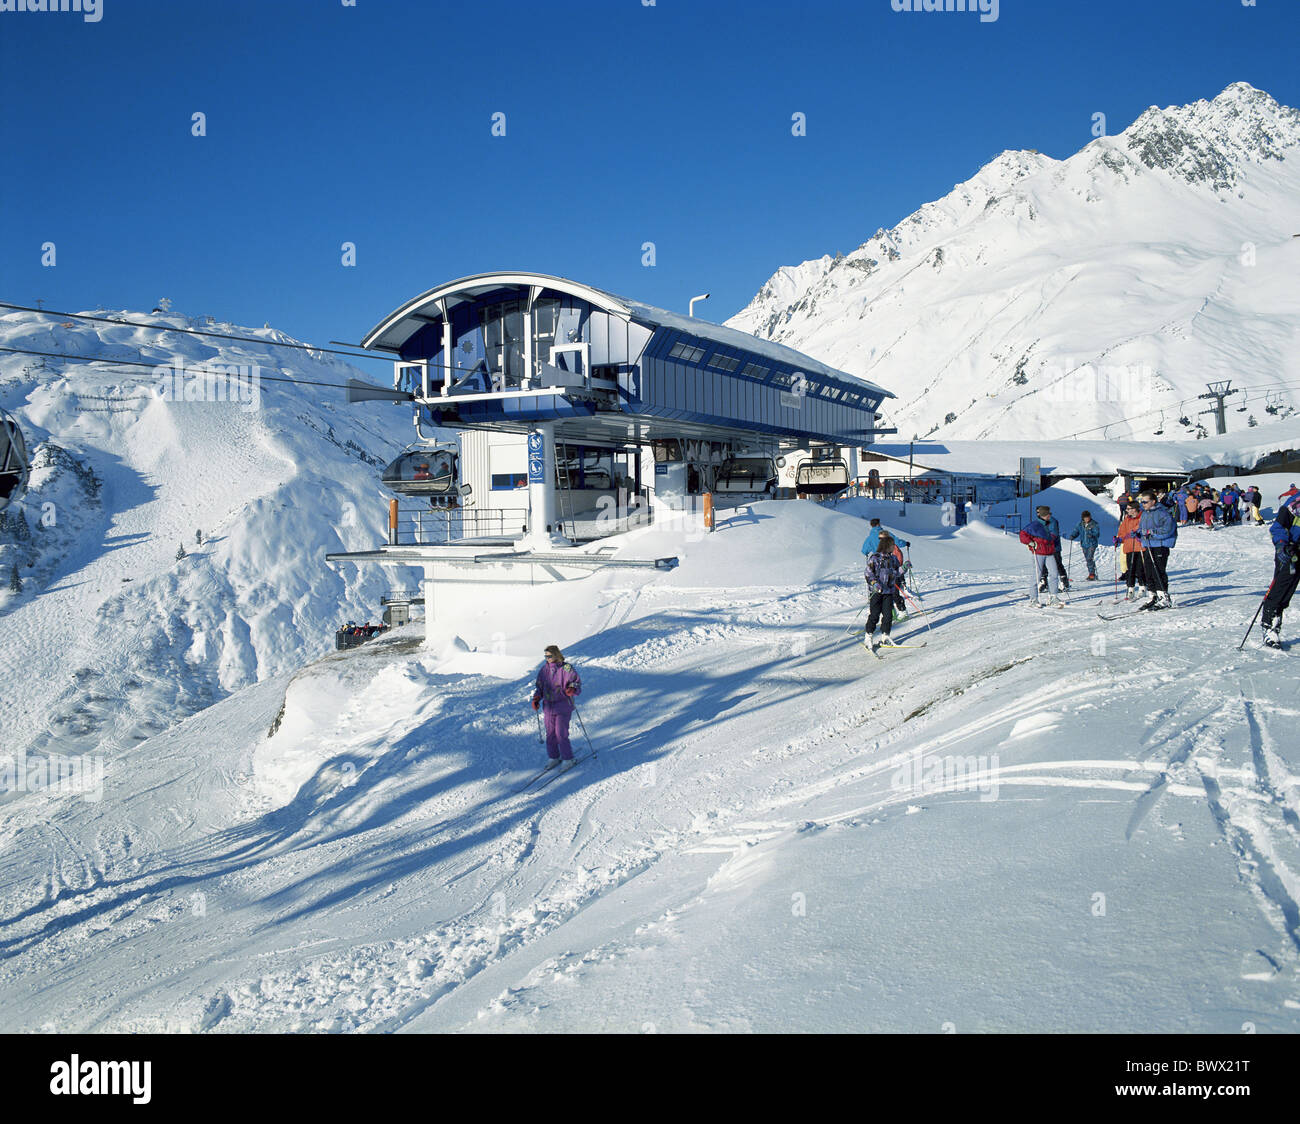 Station de montagne aucune moderne modèle libération Autriche Europe fauteuil ascenseur pente sport sports d'hiver ski Banque D'Images